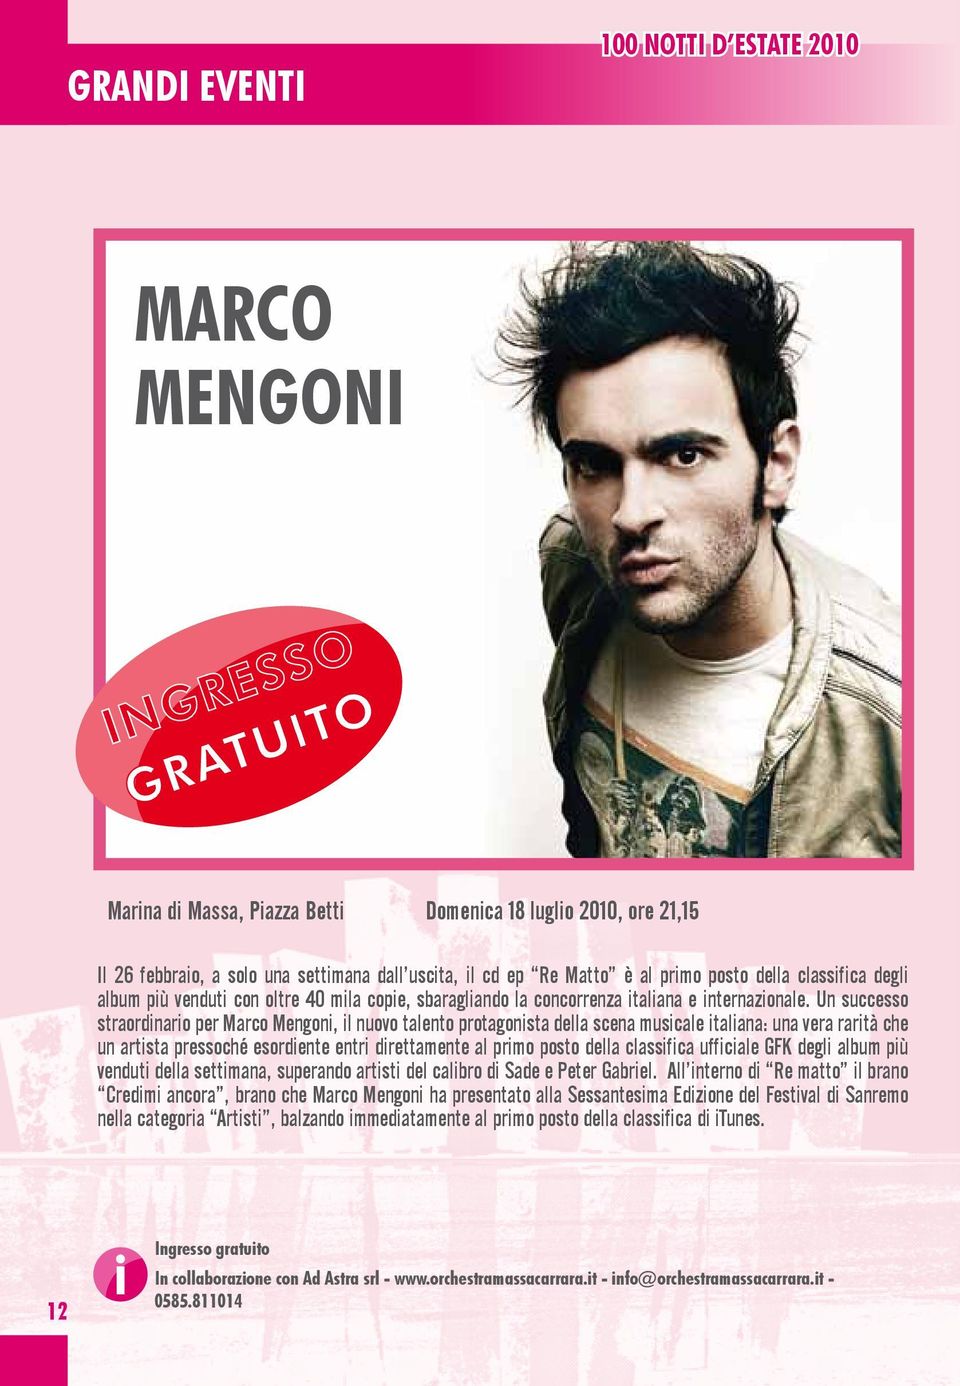 Un successo straordinario per Marco Mengoni, il nuovo talento protagonista della scena musicale italiana: una vera rarità che un artista pressoché esordiente entri direttamente al primo posto della